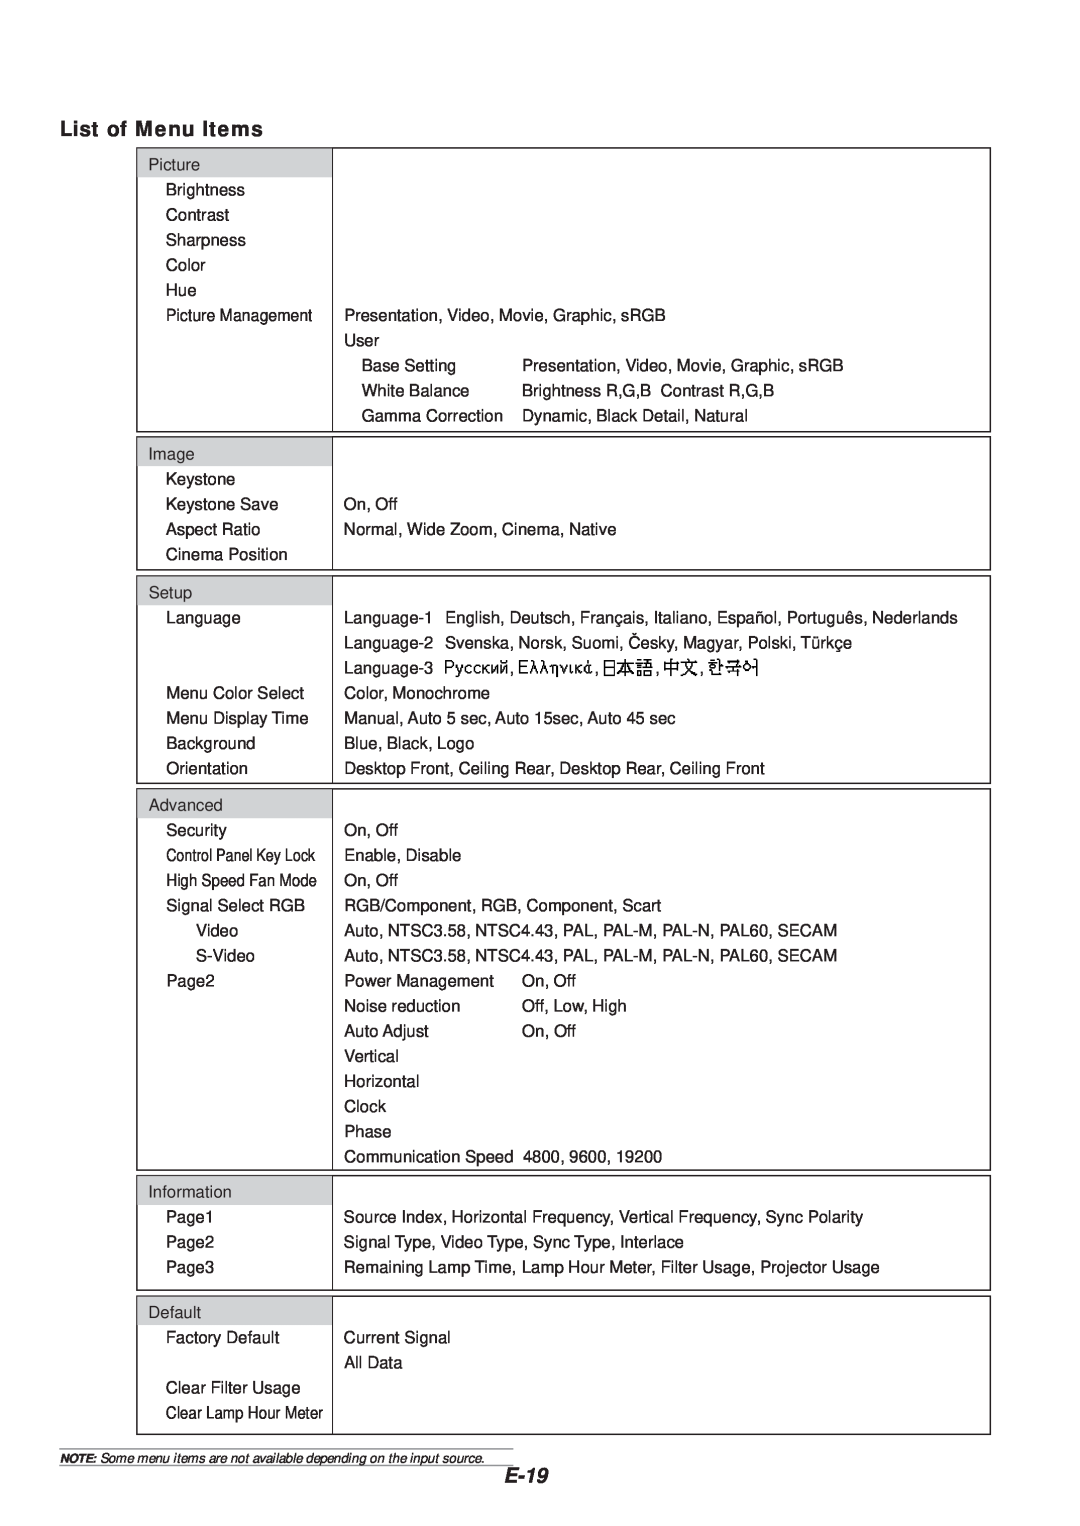 NEC VT46 user manual List of Menu Items, E-19 